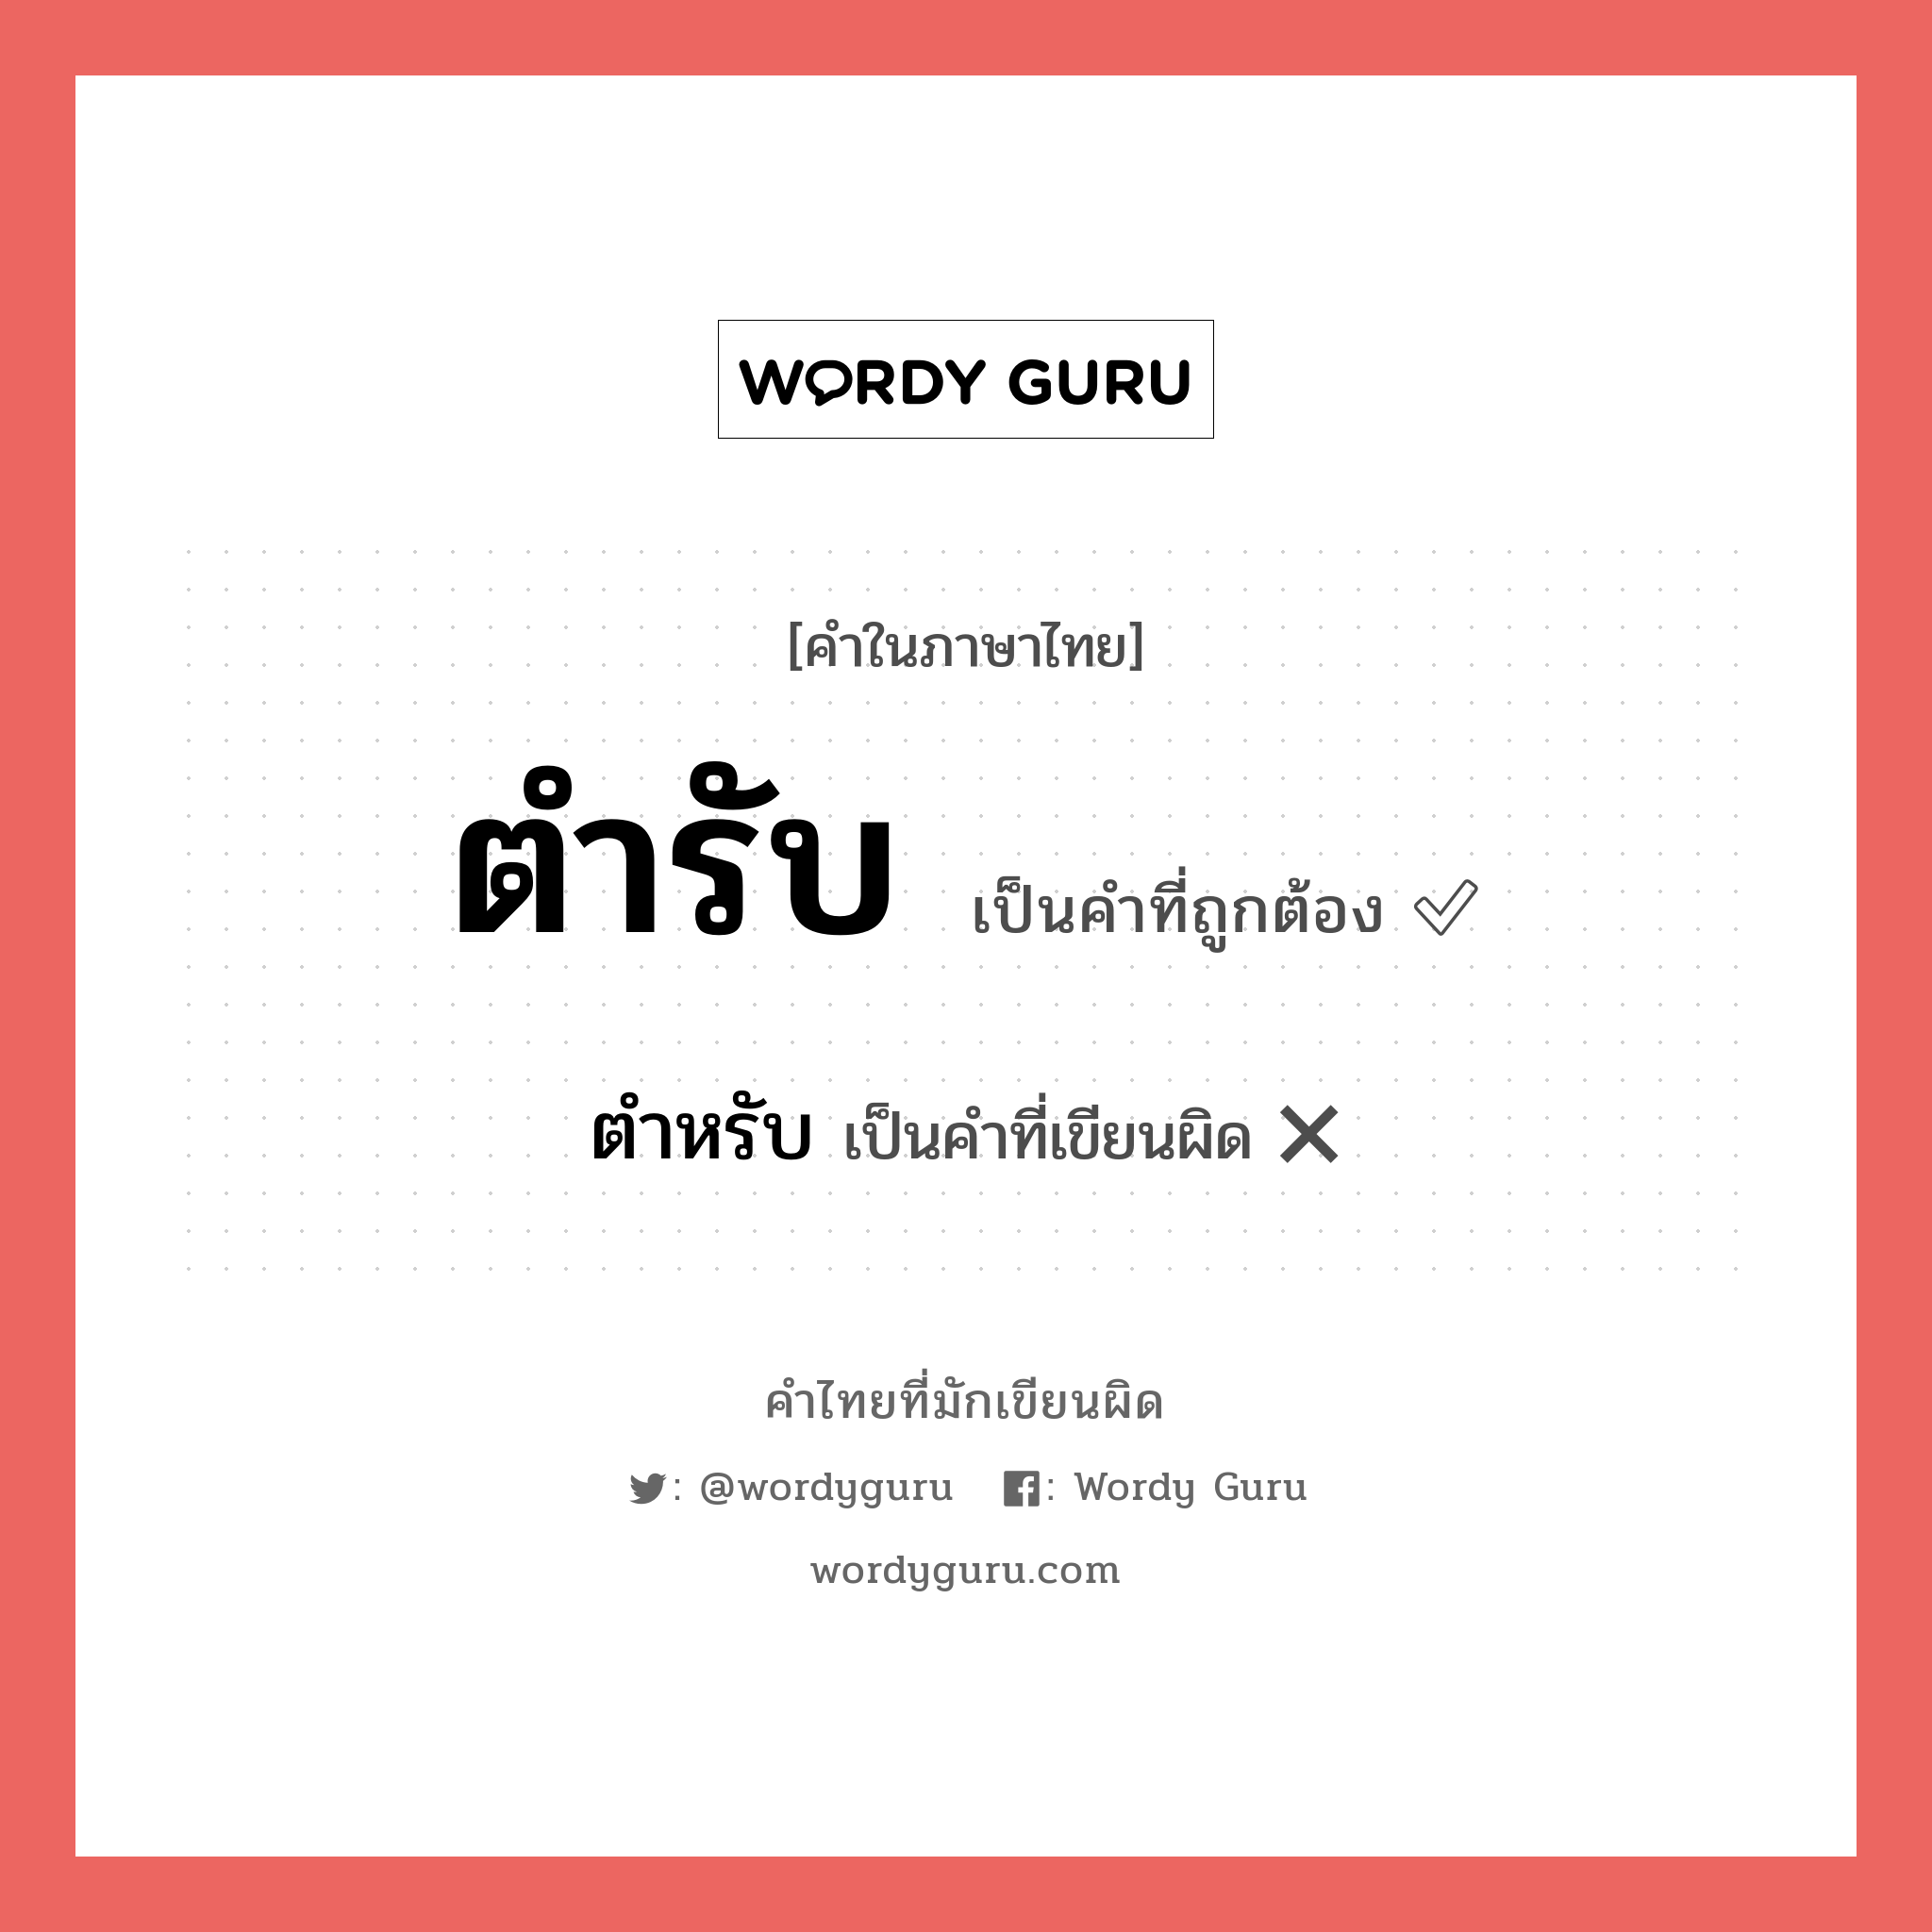 ตำรับ หรือ ตำหรับ คำไหนเขียนถูก?, คำในภาษาไทยที่มักเขียนผิด ตำรับ คำที่ผิด ❌ ตำหรับ